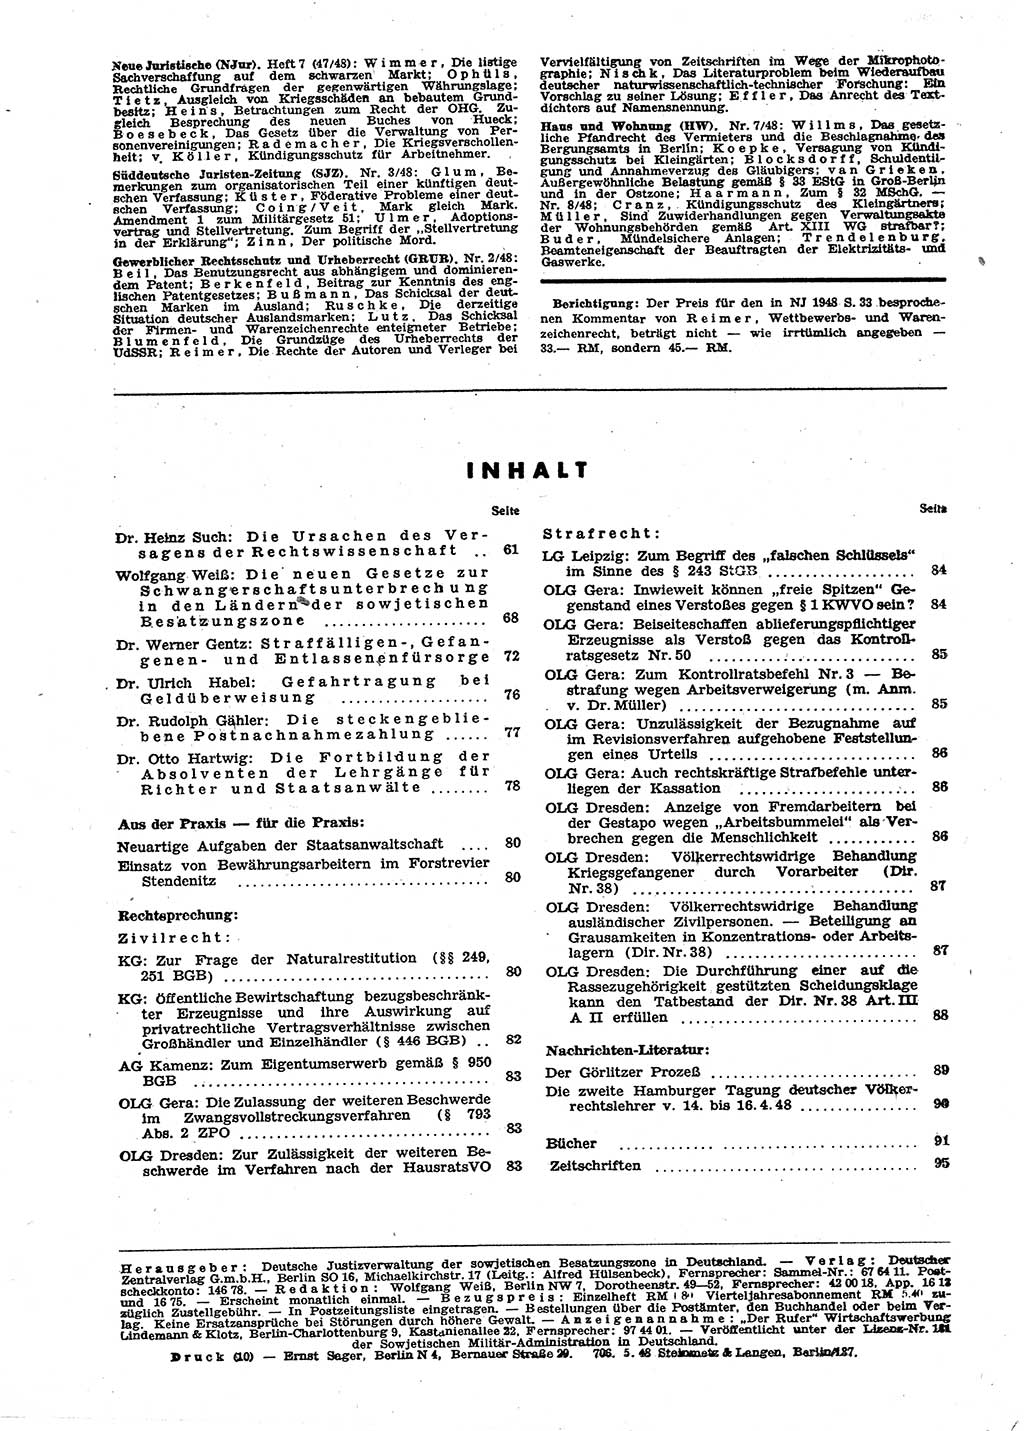 Neue Justiz (NJ), Zeitschrift für Recht und Rechtswissenschaft [Sowjetische Besatzungszone (SBZ) Deutschland], 2. Jahrgang 1948, Seite 96 (NJ SBZ Dtl. 1948, S. 96)